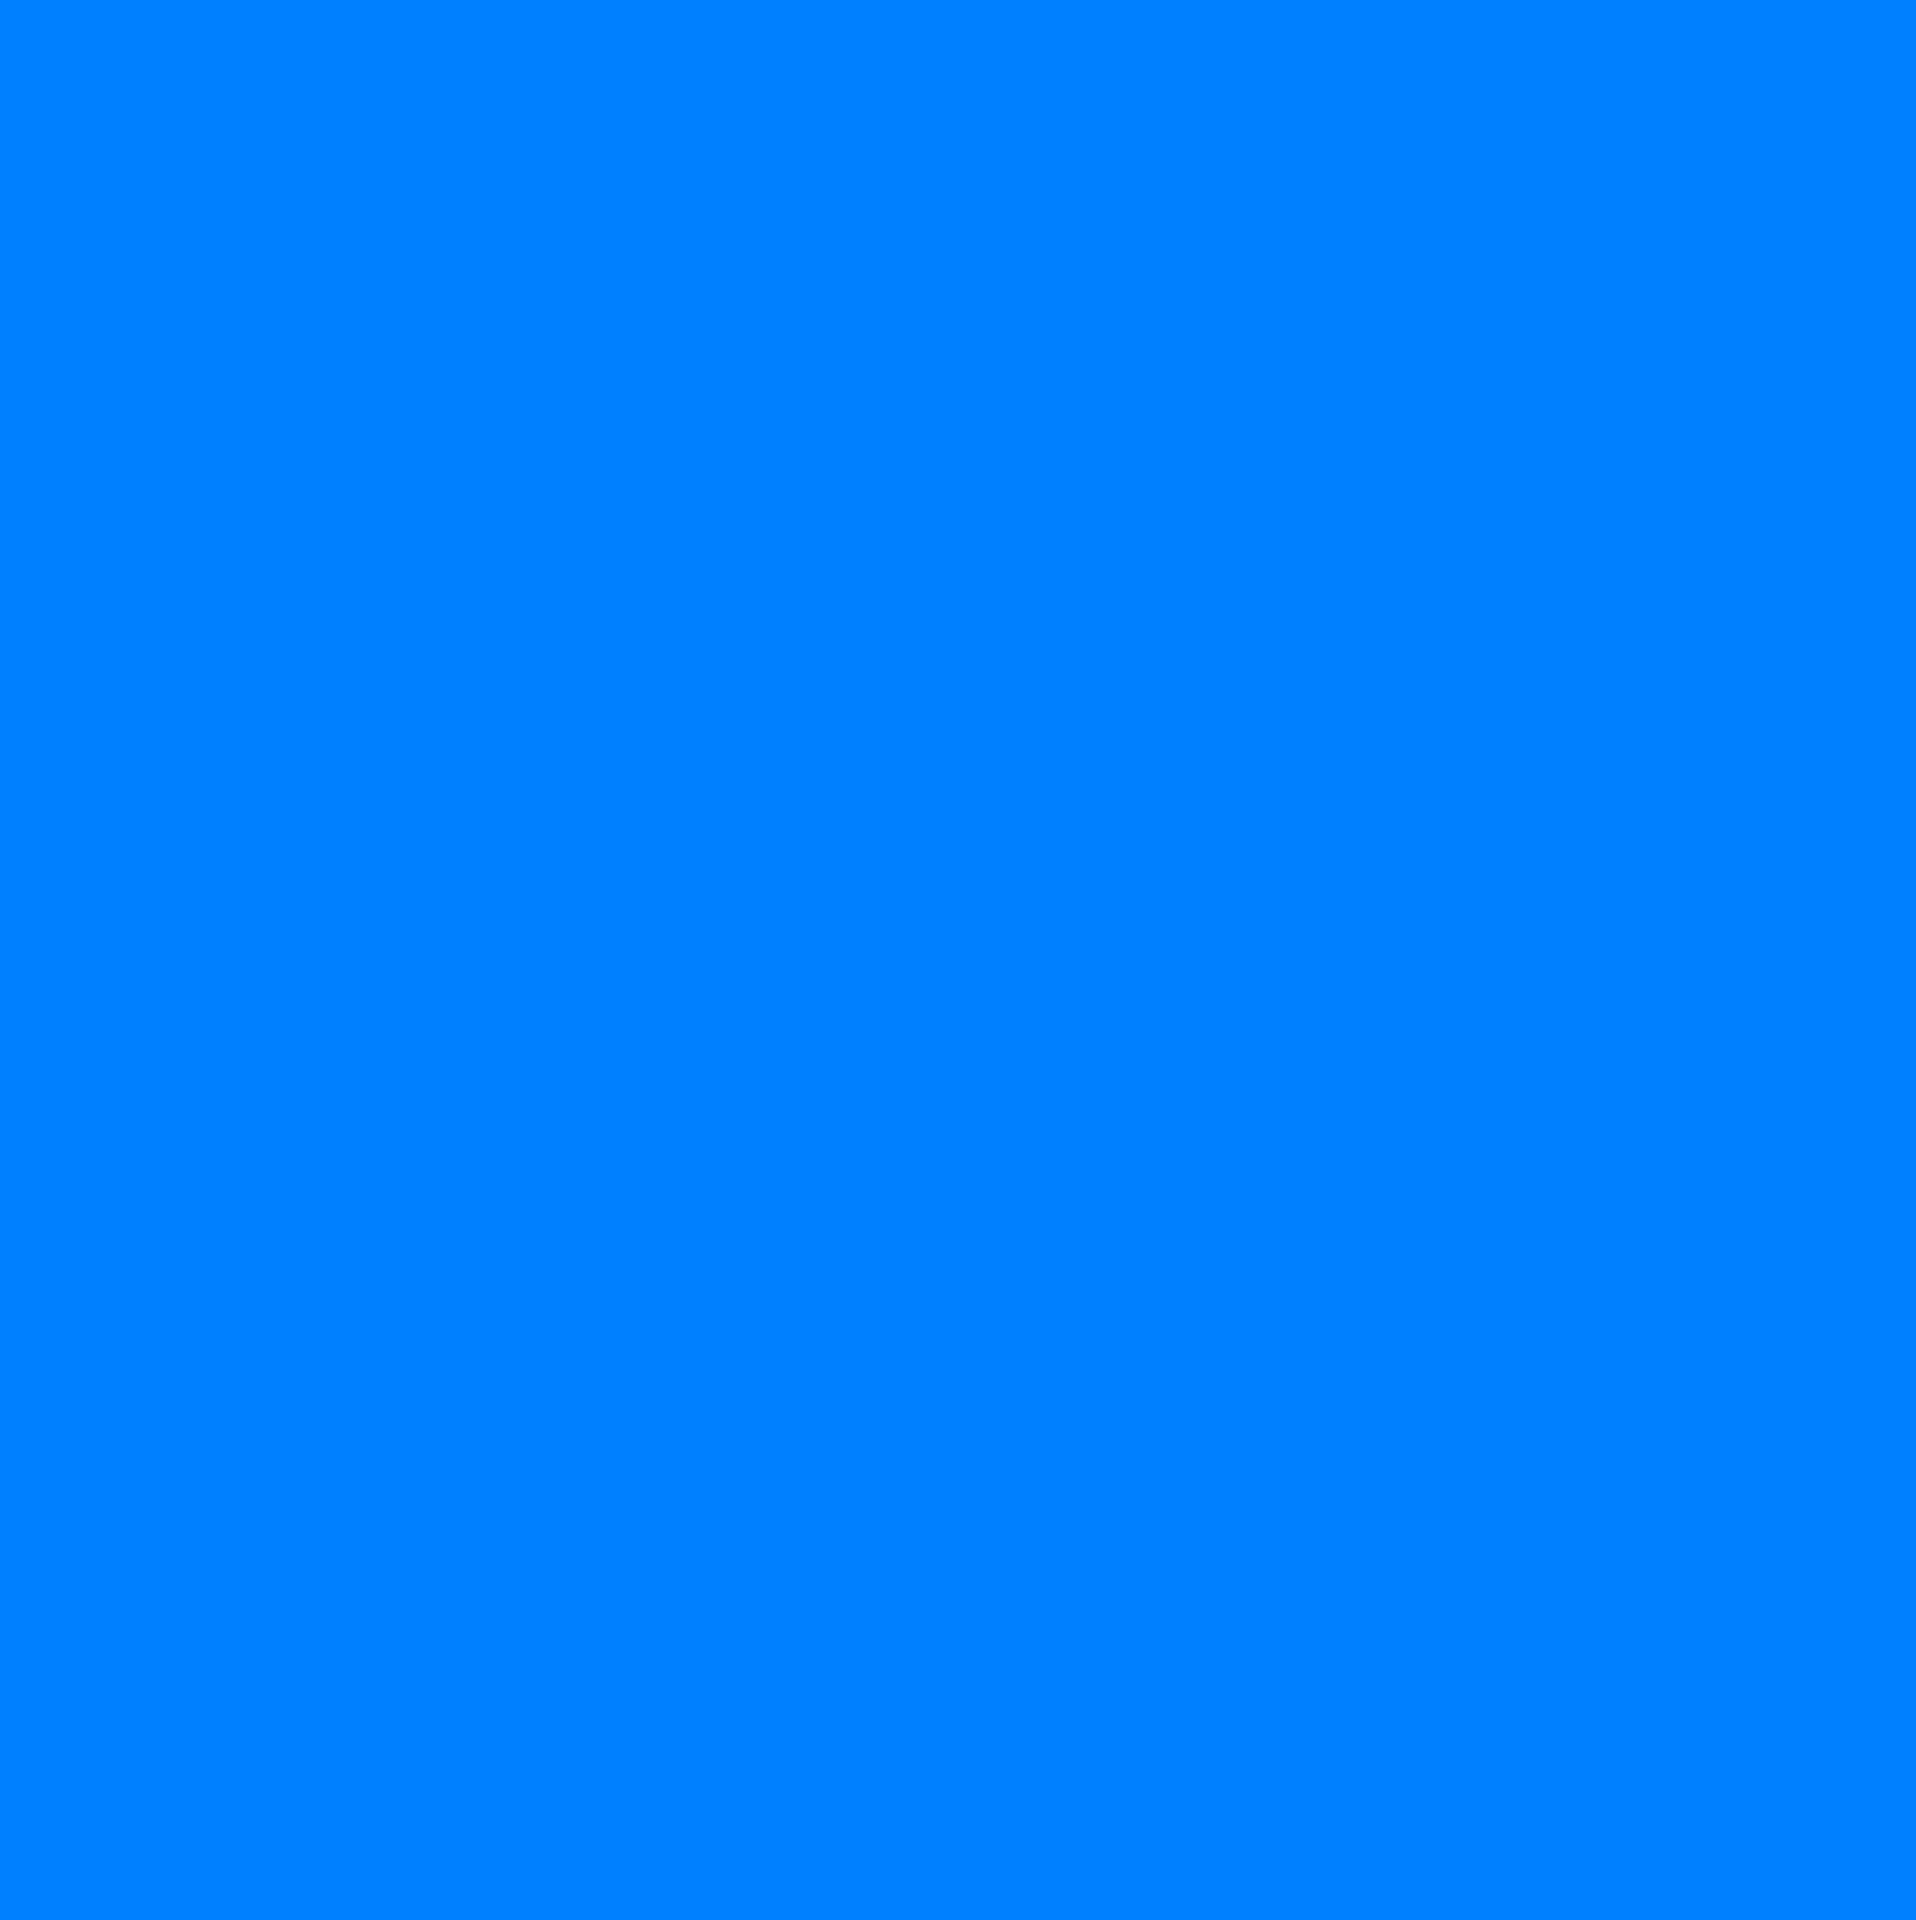 Hình nền xanh lam: Làm mới màn hình của bạn với hình nền xanh lam tươi mát. Đây là màu sắc đặc biệt có tác dụng làm giảm căng thẳng và tăng cường tinh thần. Chọn một hình nền xanh lam đẹp để tận hưởng không gian làm việc hoặc giải trí tinh tế.